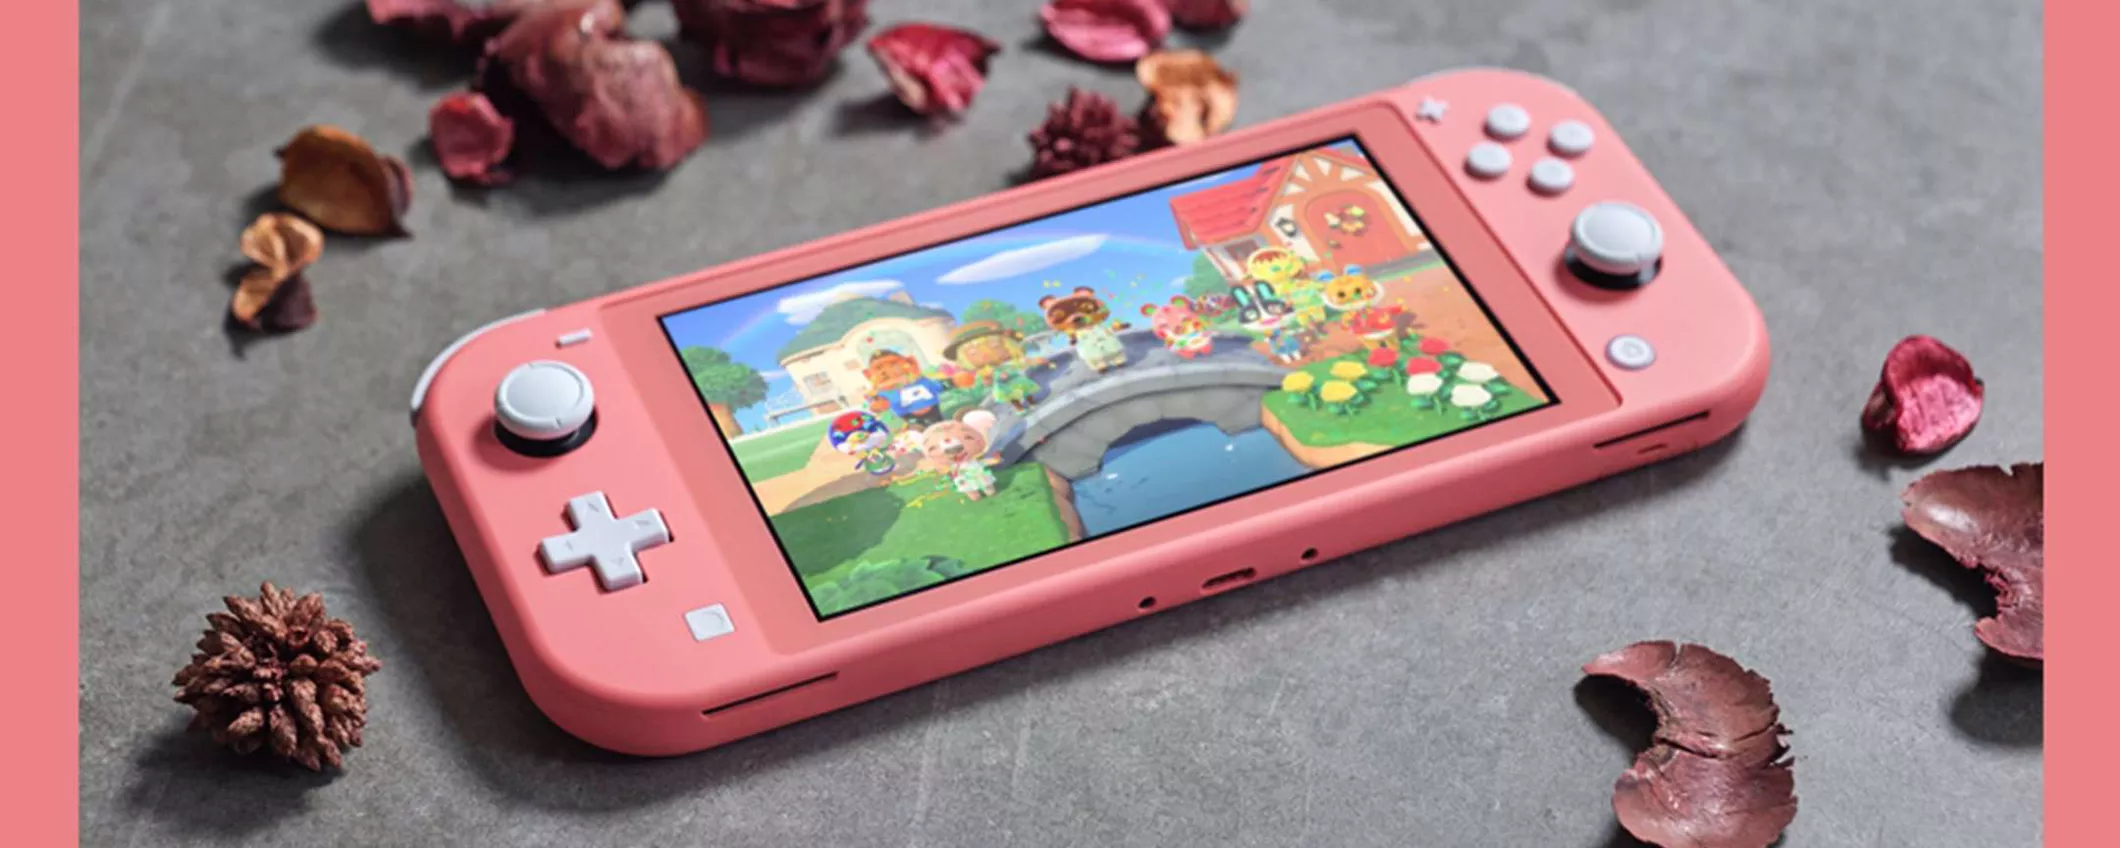 Nintendo Switch Lite: la colorazione Corallo CROLLA DI PREZZO su Amazon!